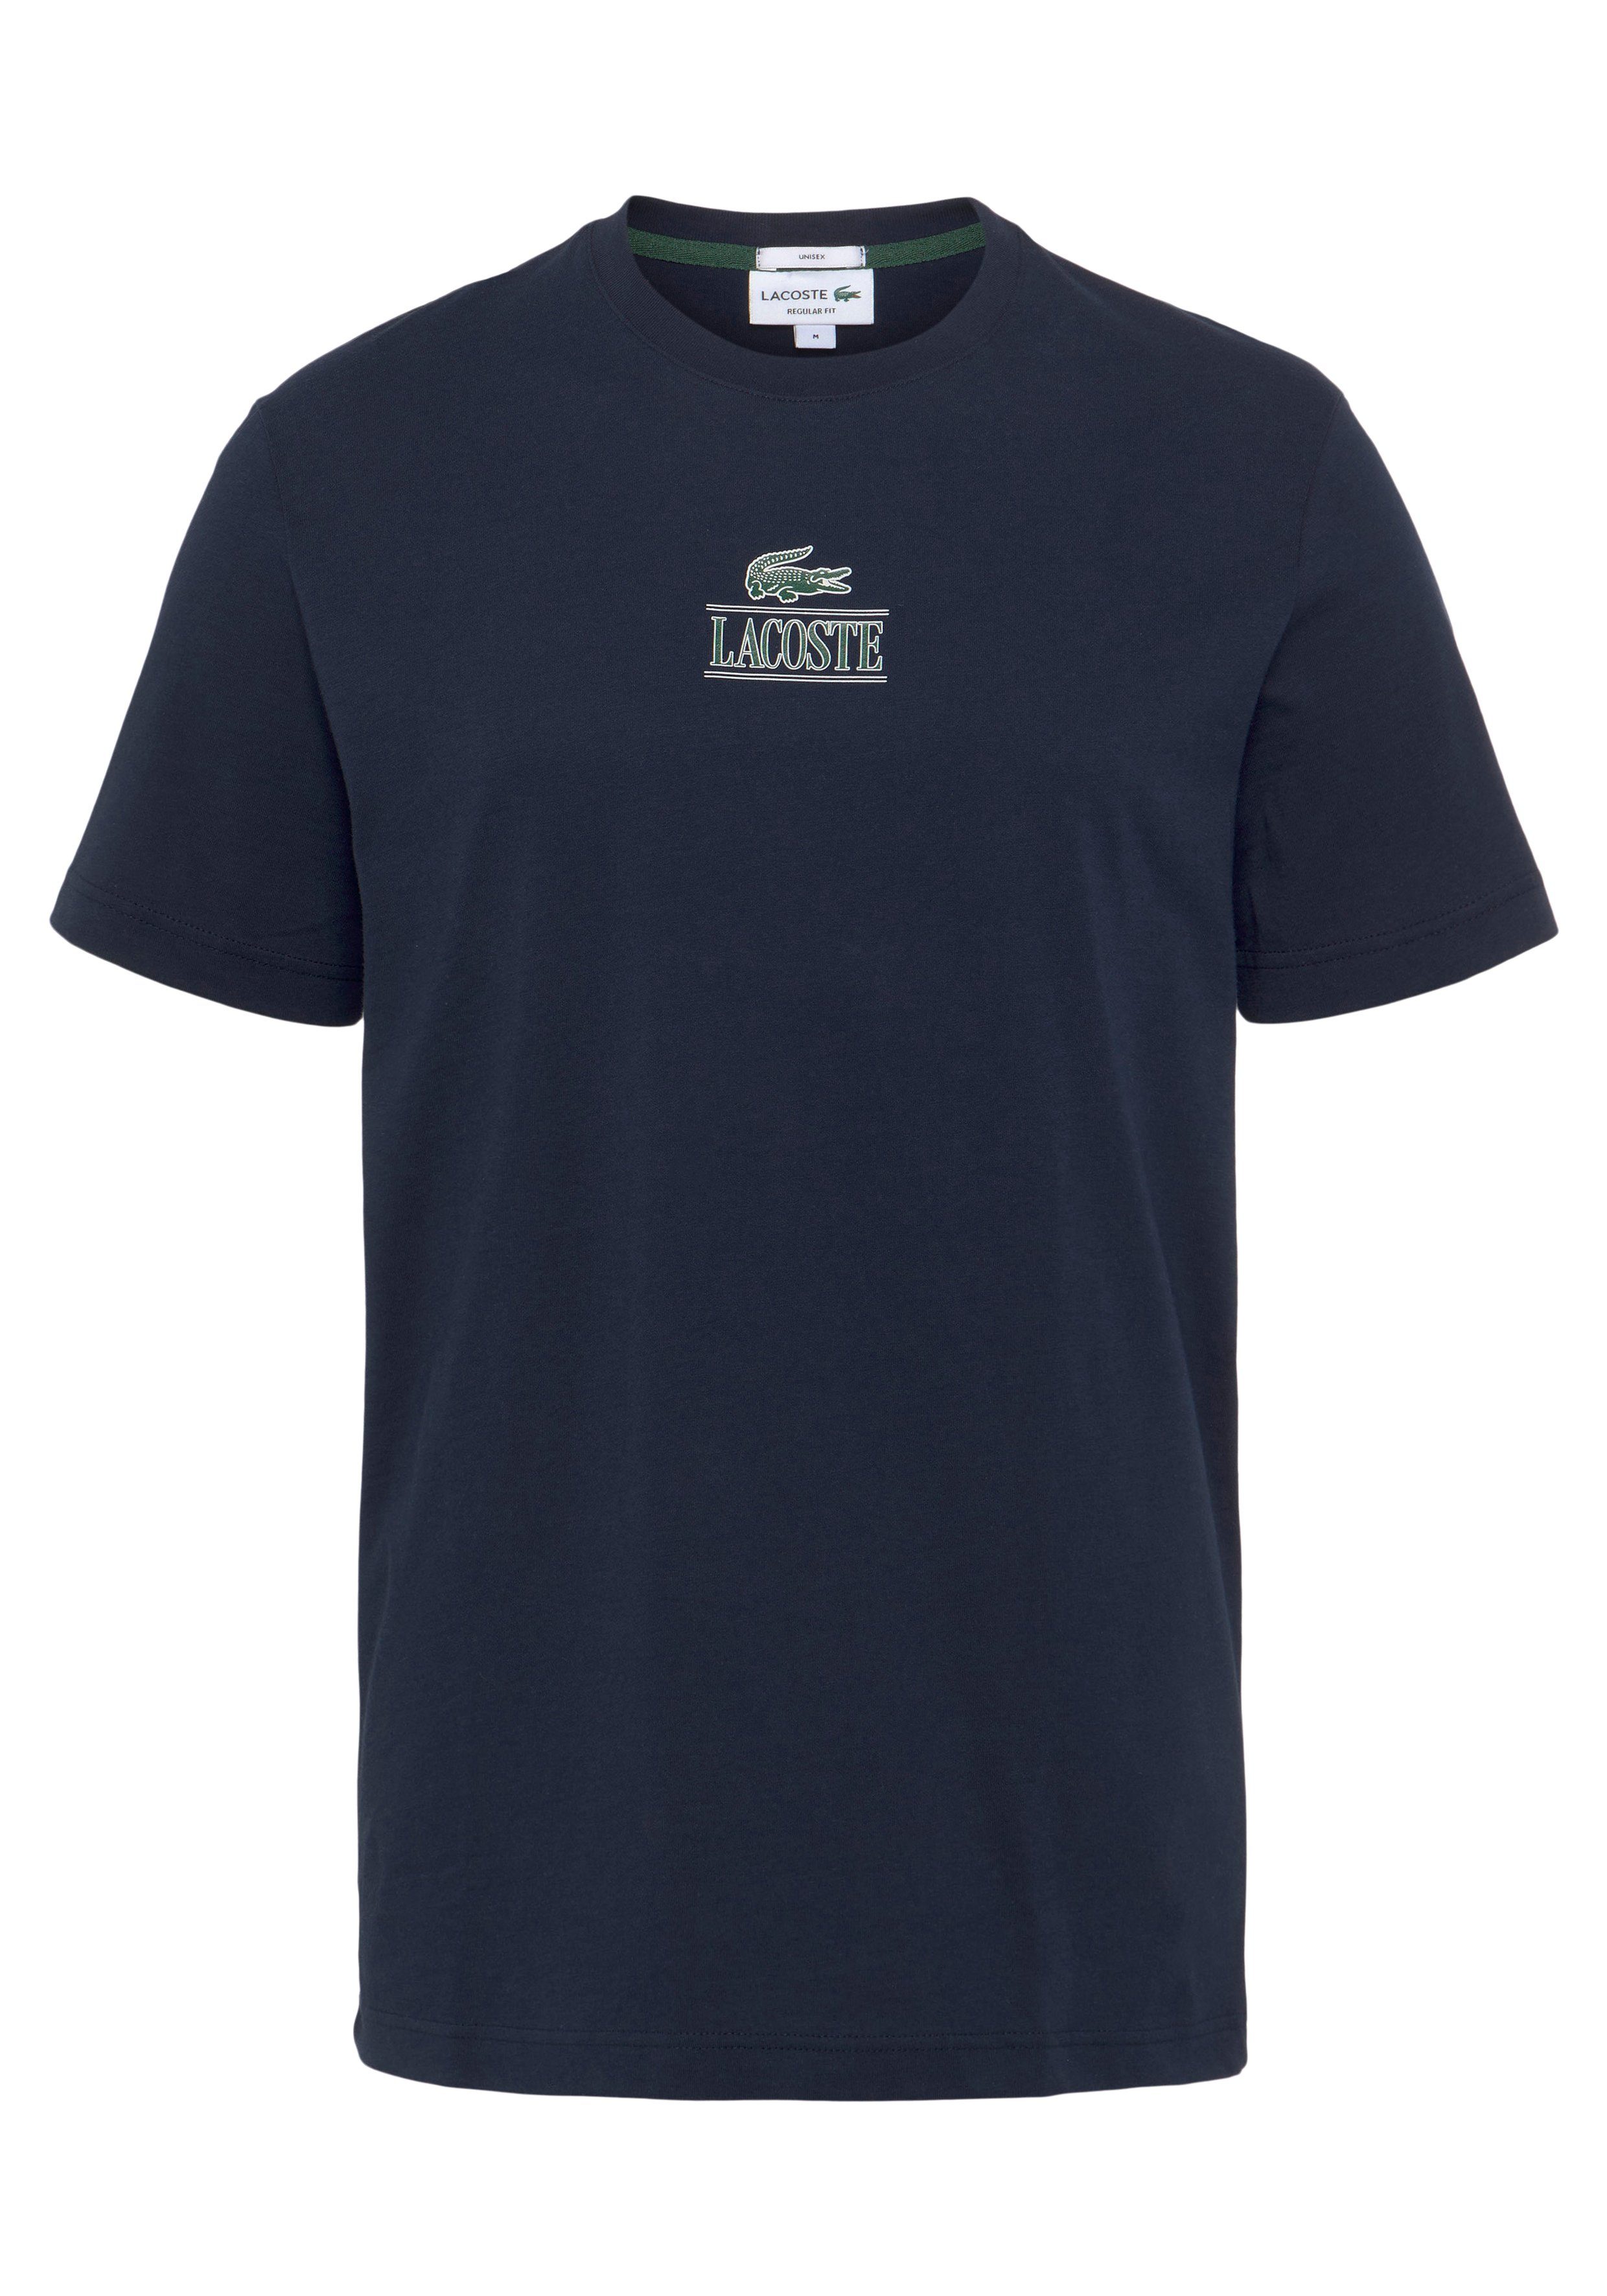 Lacoste Brust der NAVY BLUE Lacoste Print auf T-Shirt T-SHIRT mit